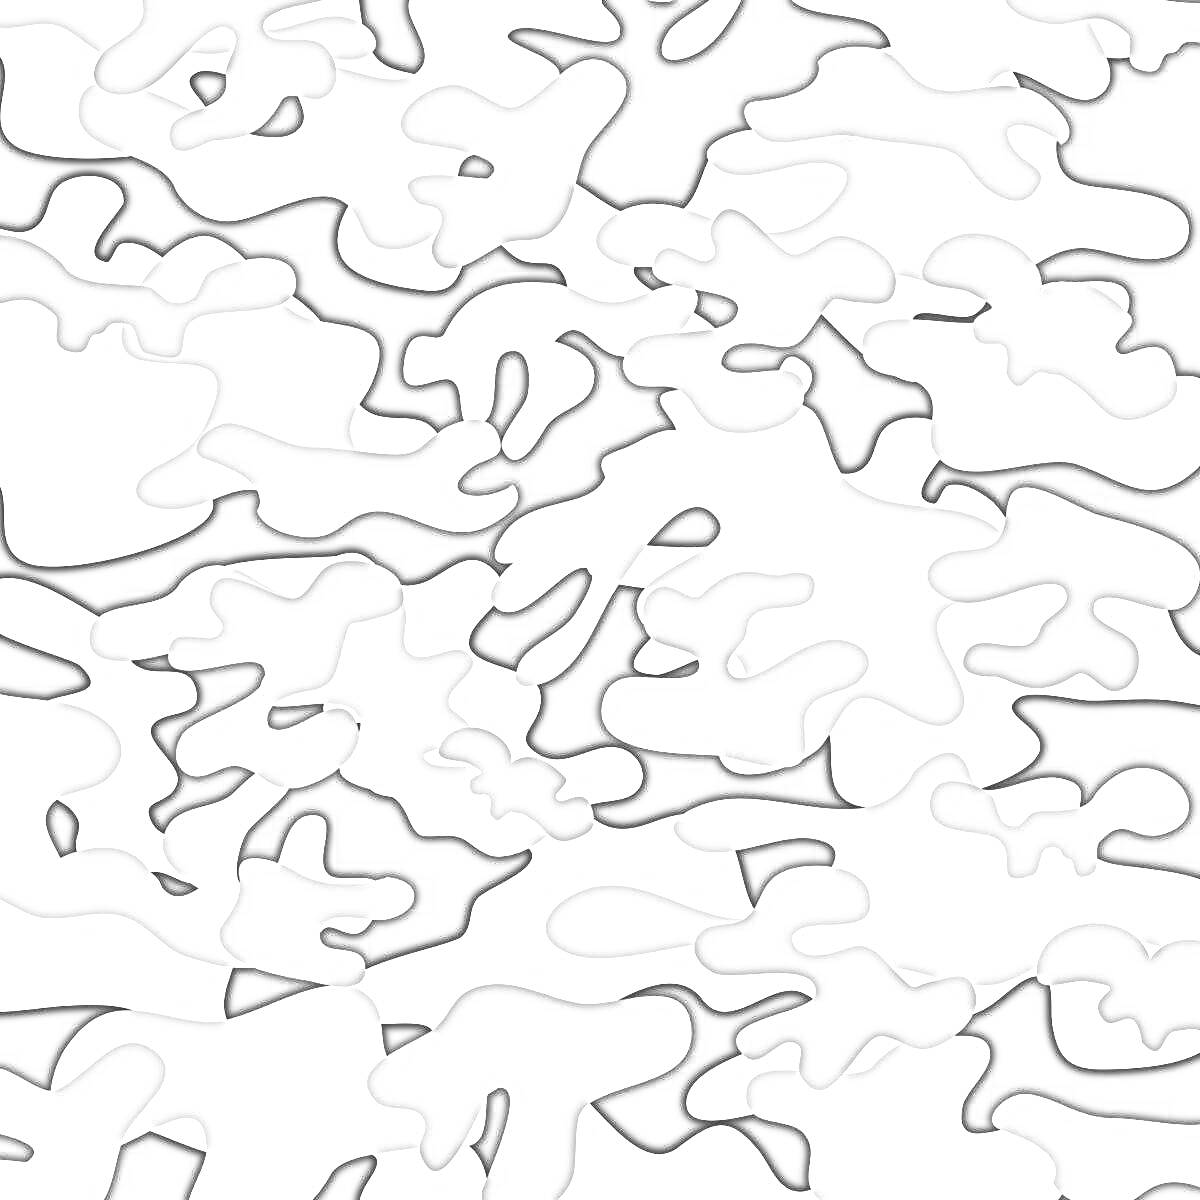 Раскраска Черно-белый камуфляжный узор с пятнами различных оттенков серого